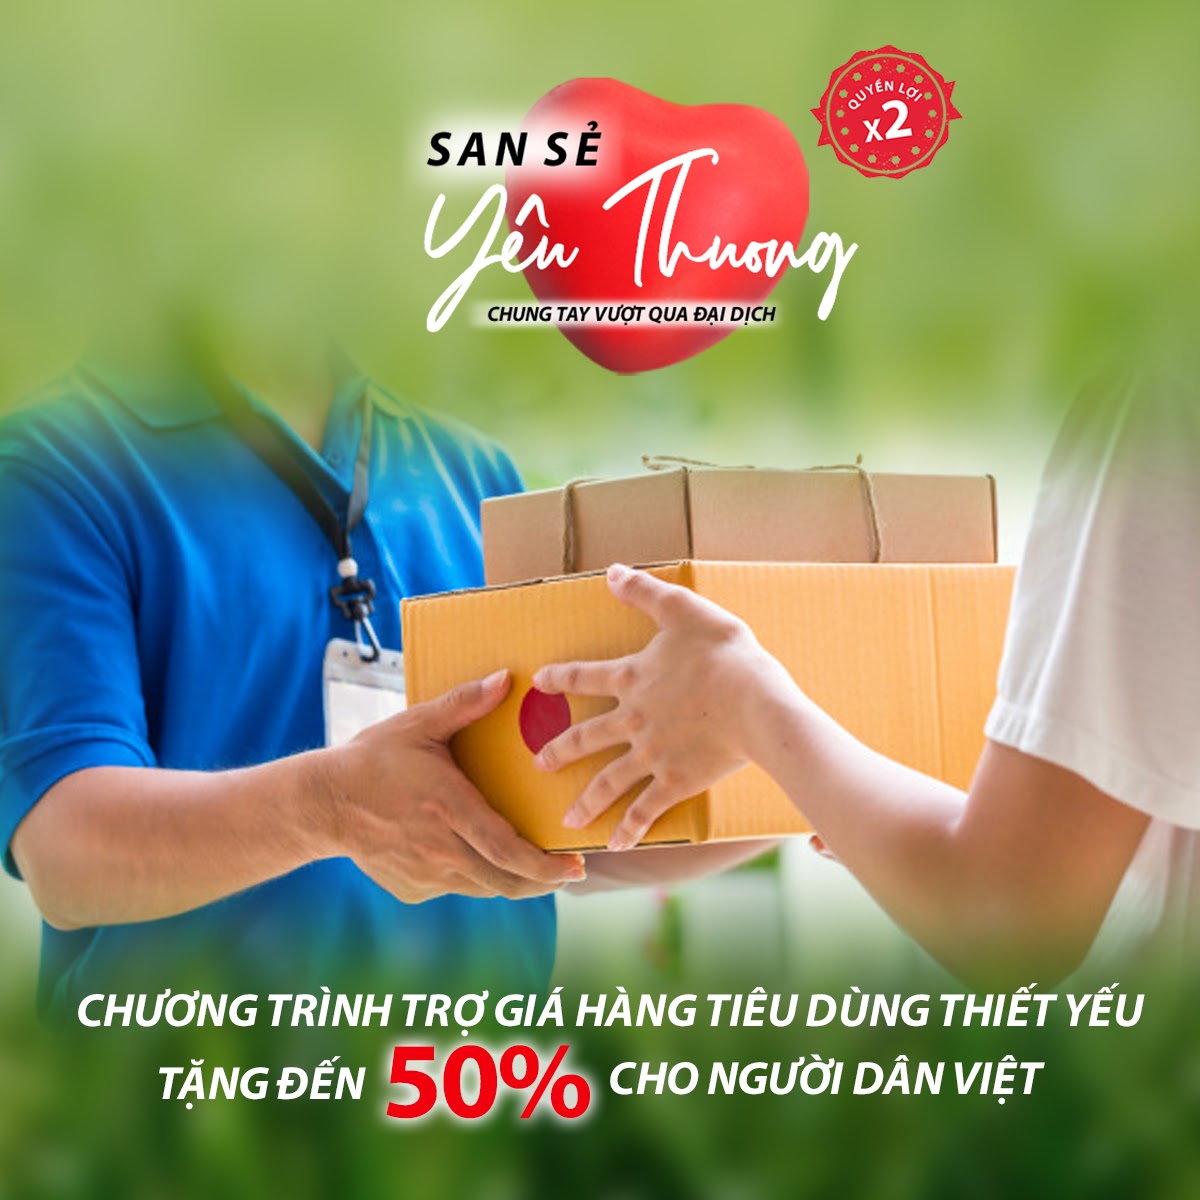 “Sản sẻ yêu thương” - sẻ chia gánh nặng kinh tế với hàng triệu gia đình Việt